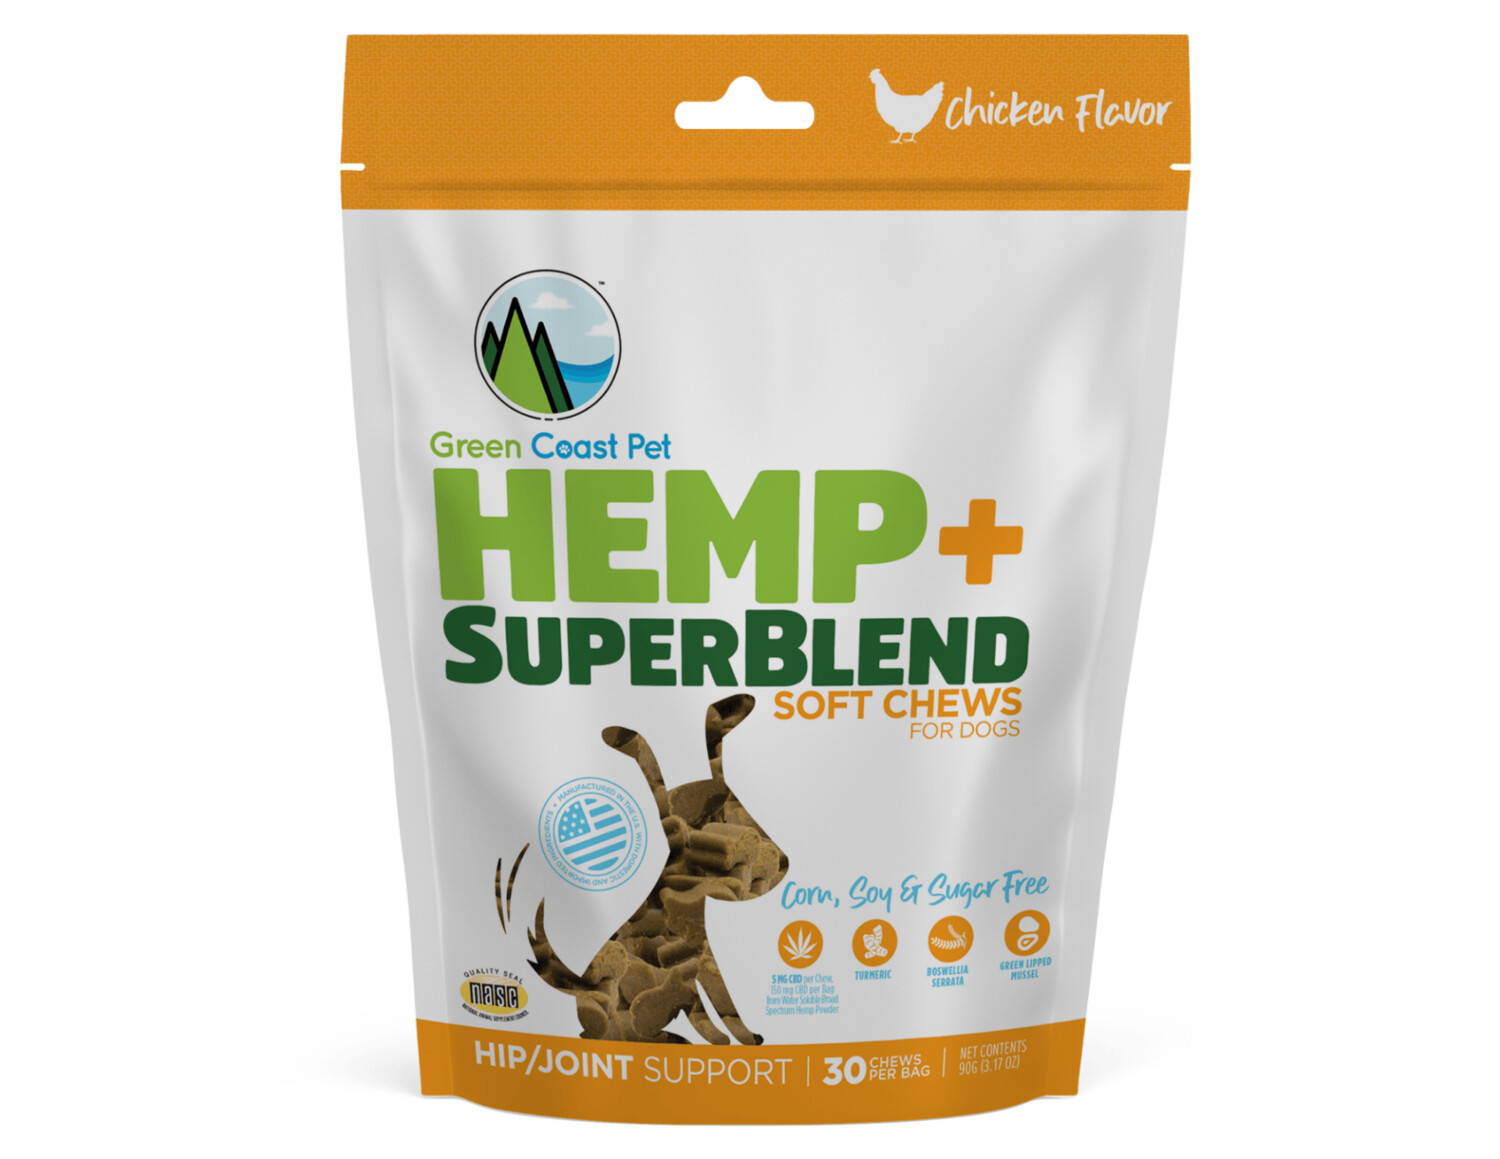 Hemp + SuperBlend Soft Chews - Chicken Flavor